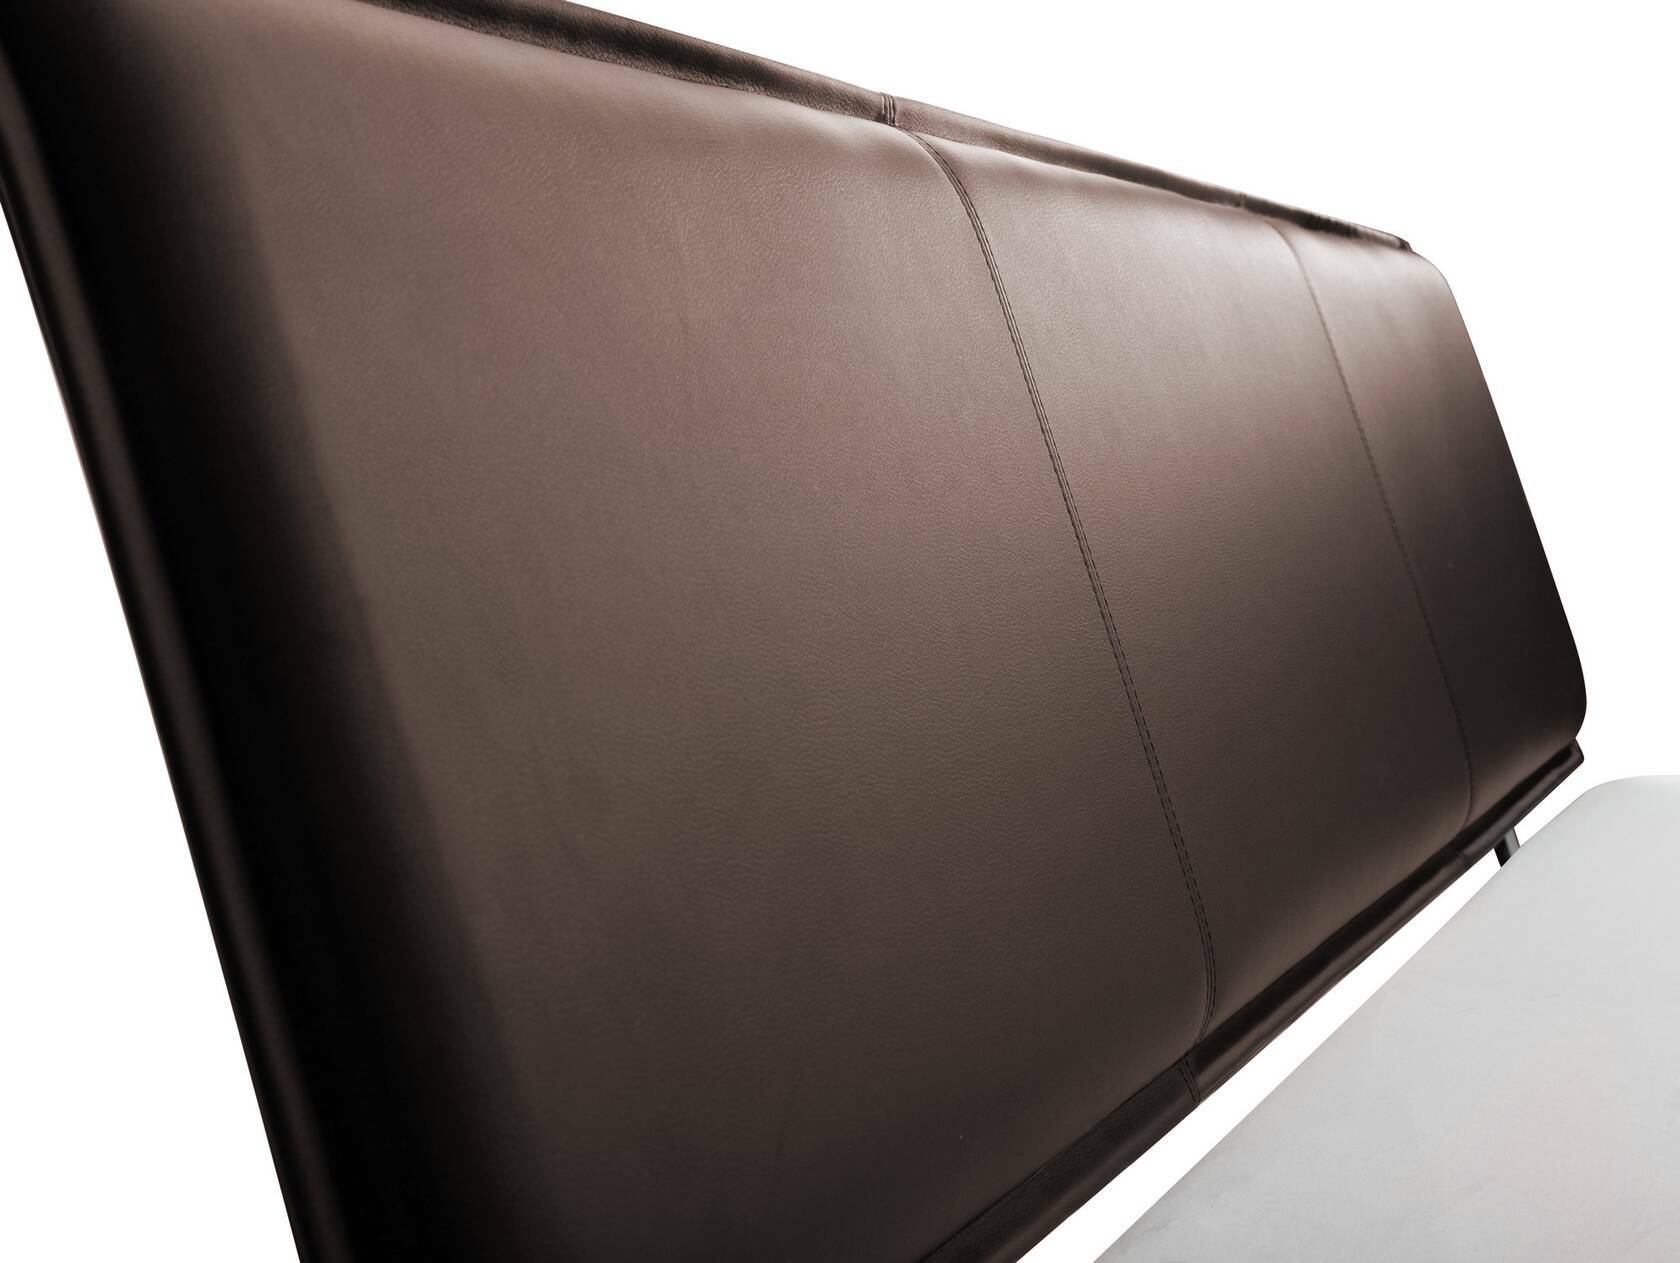 LIAS Balkenbett mit Polster-Kopfteil, 4-Fuß, Material Massivholz Eiche 160 x 200 cm | Kunstleder Braun ohne Steppung